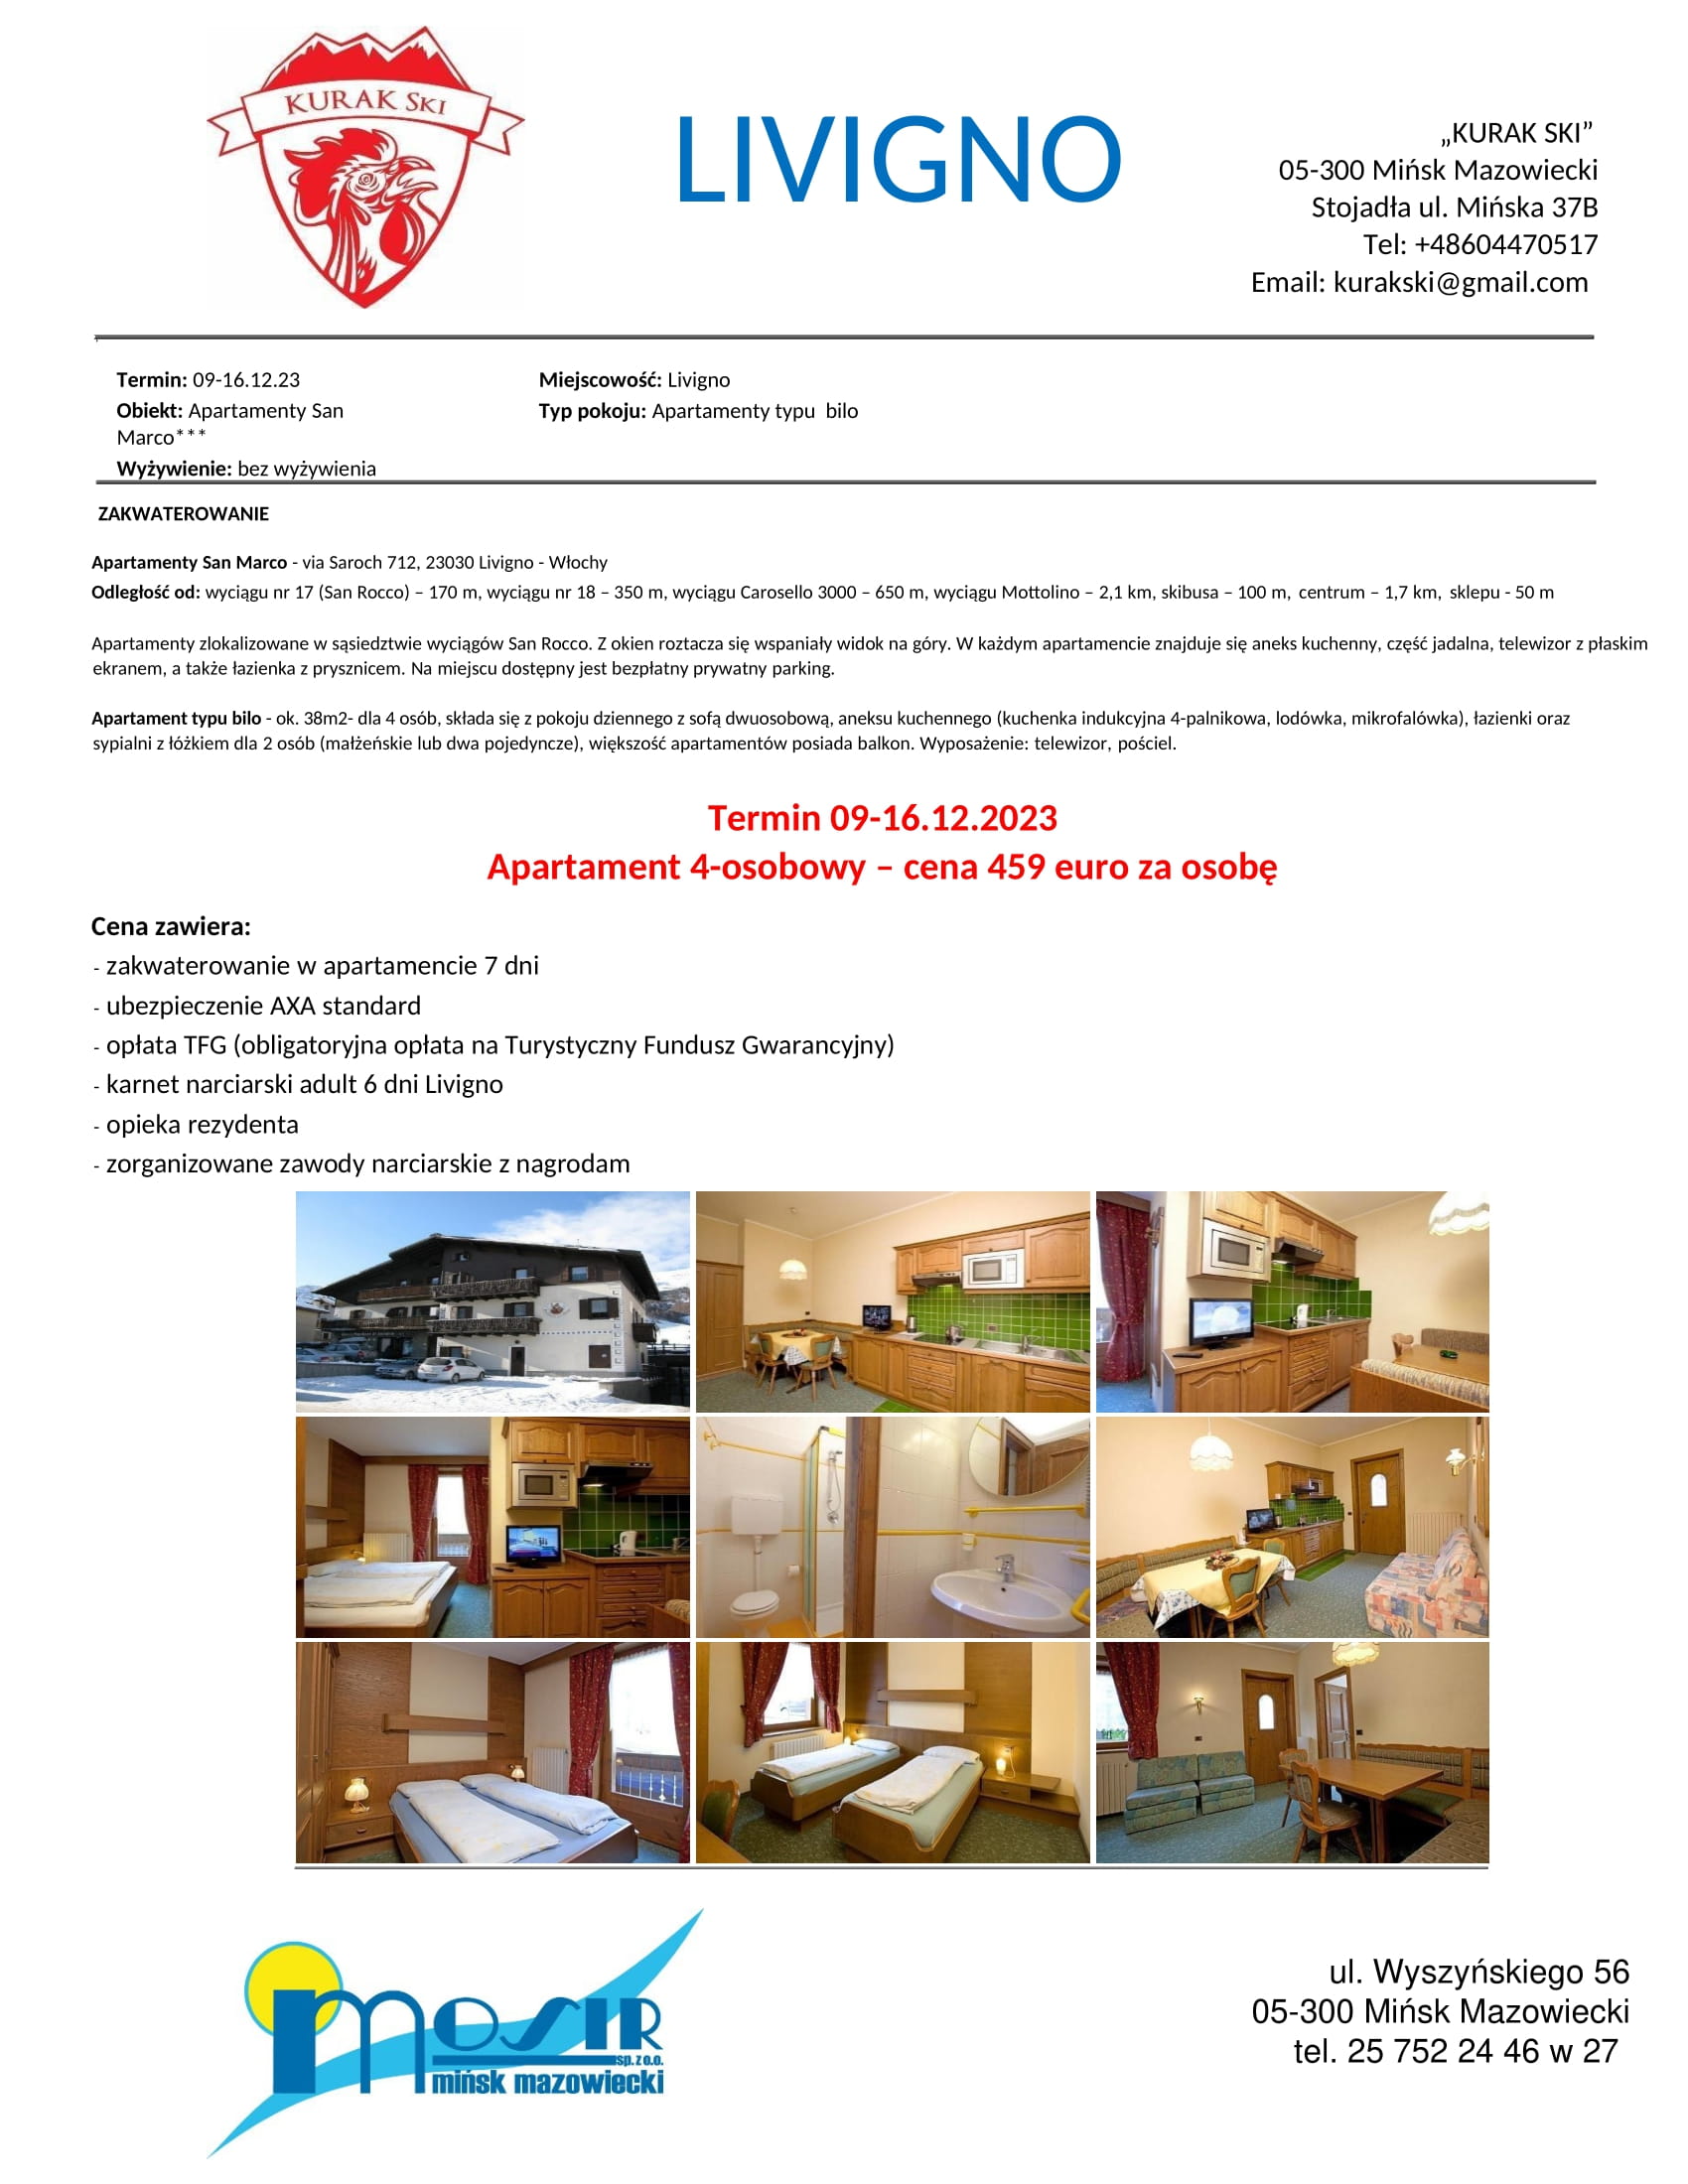 Wycieczka do Włoch 09-16.12.2023 Apartamenty San Marco - Livingo cena za osobę 459 euro